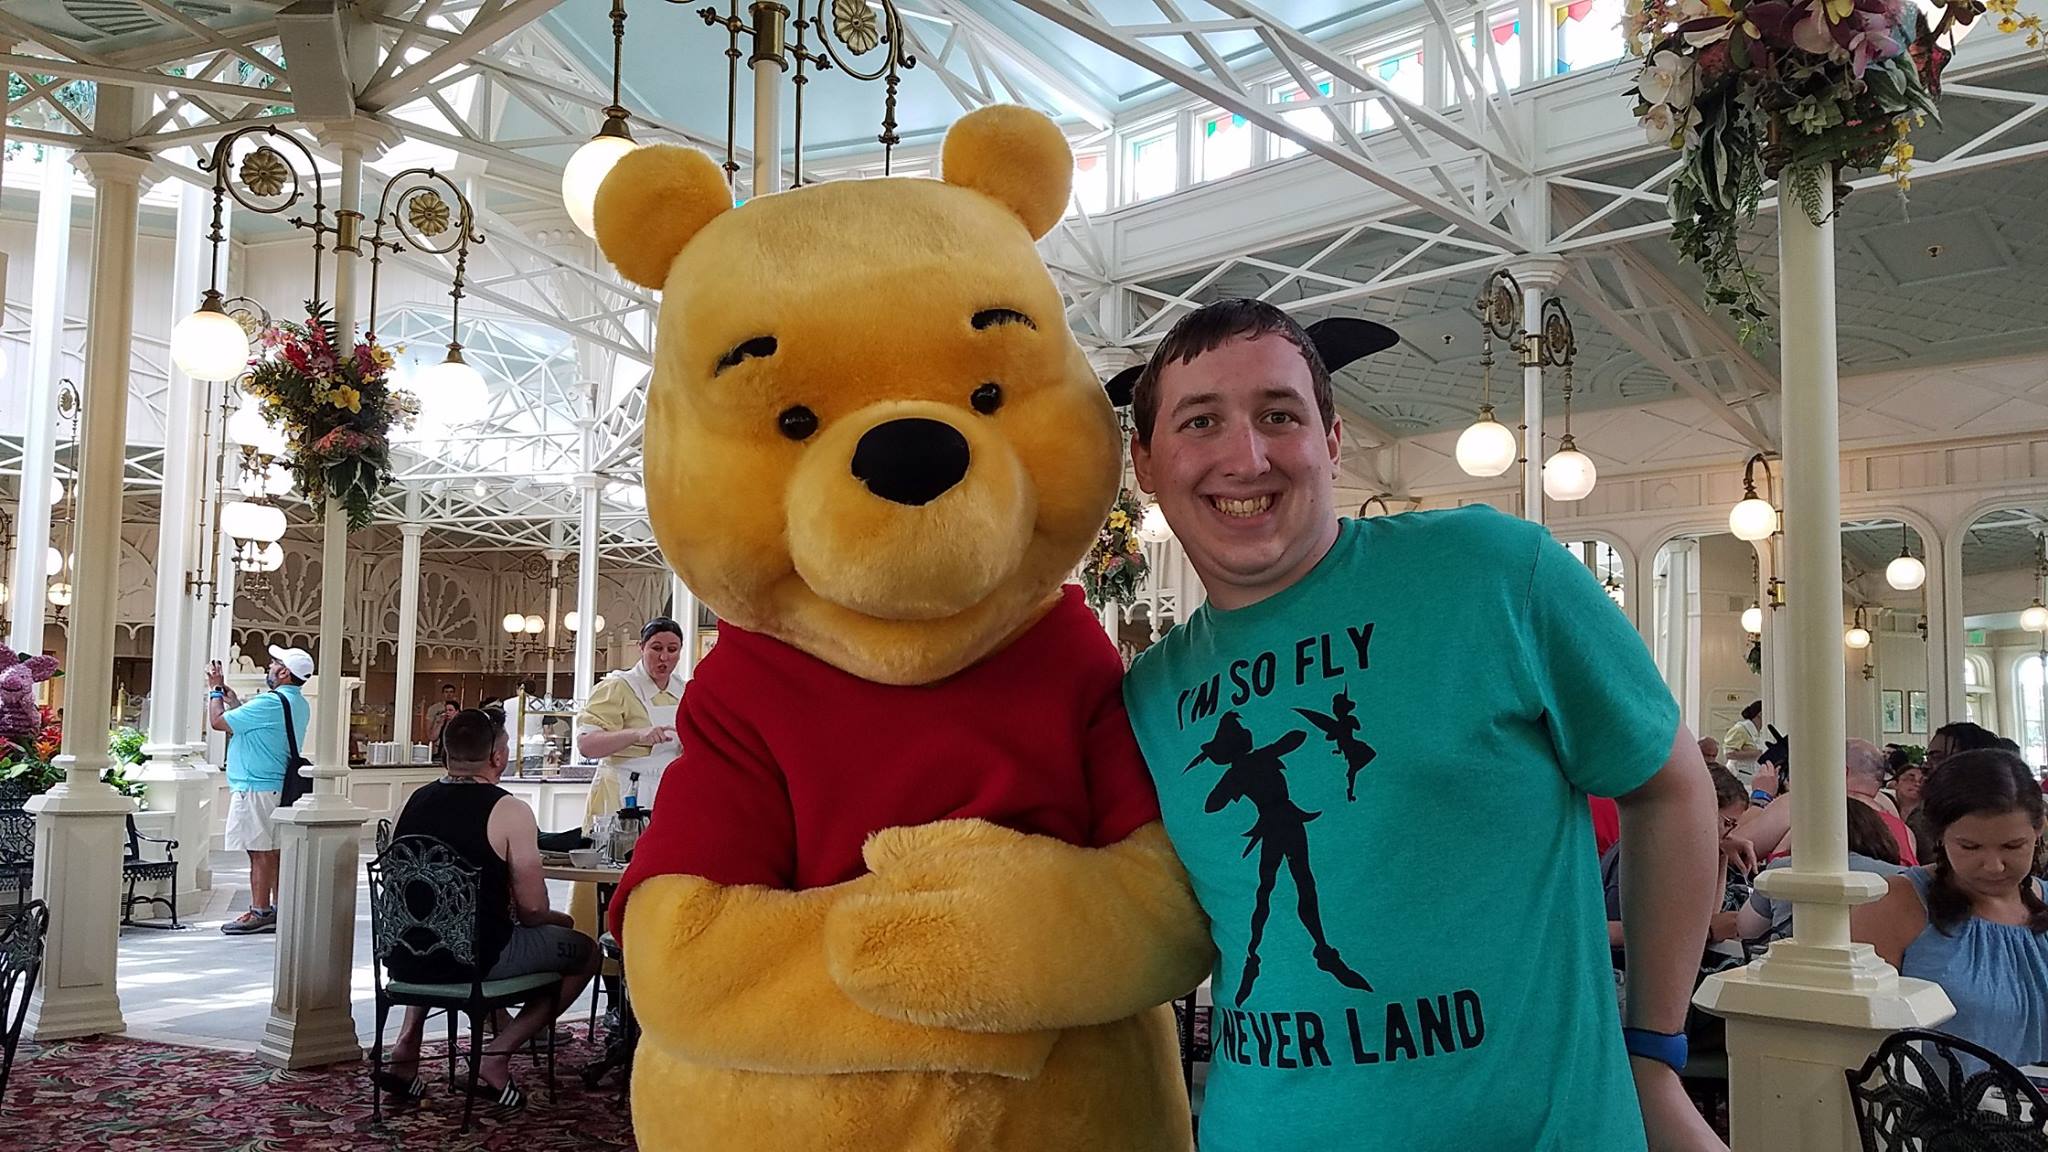 Pooh at Crystal Palace